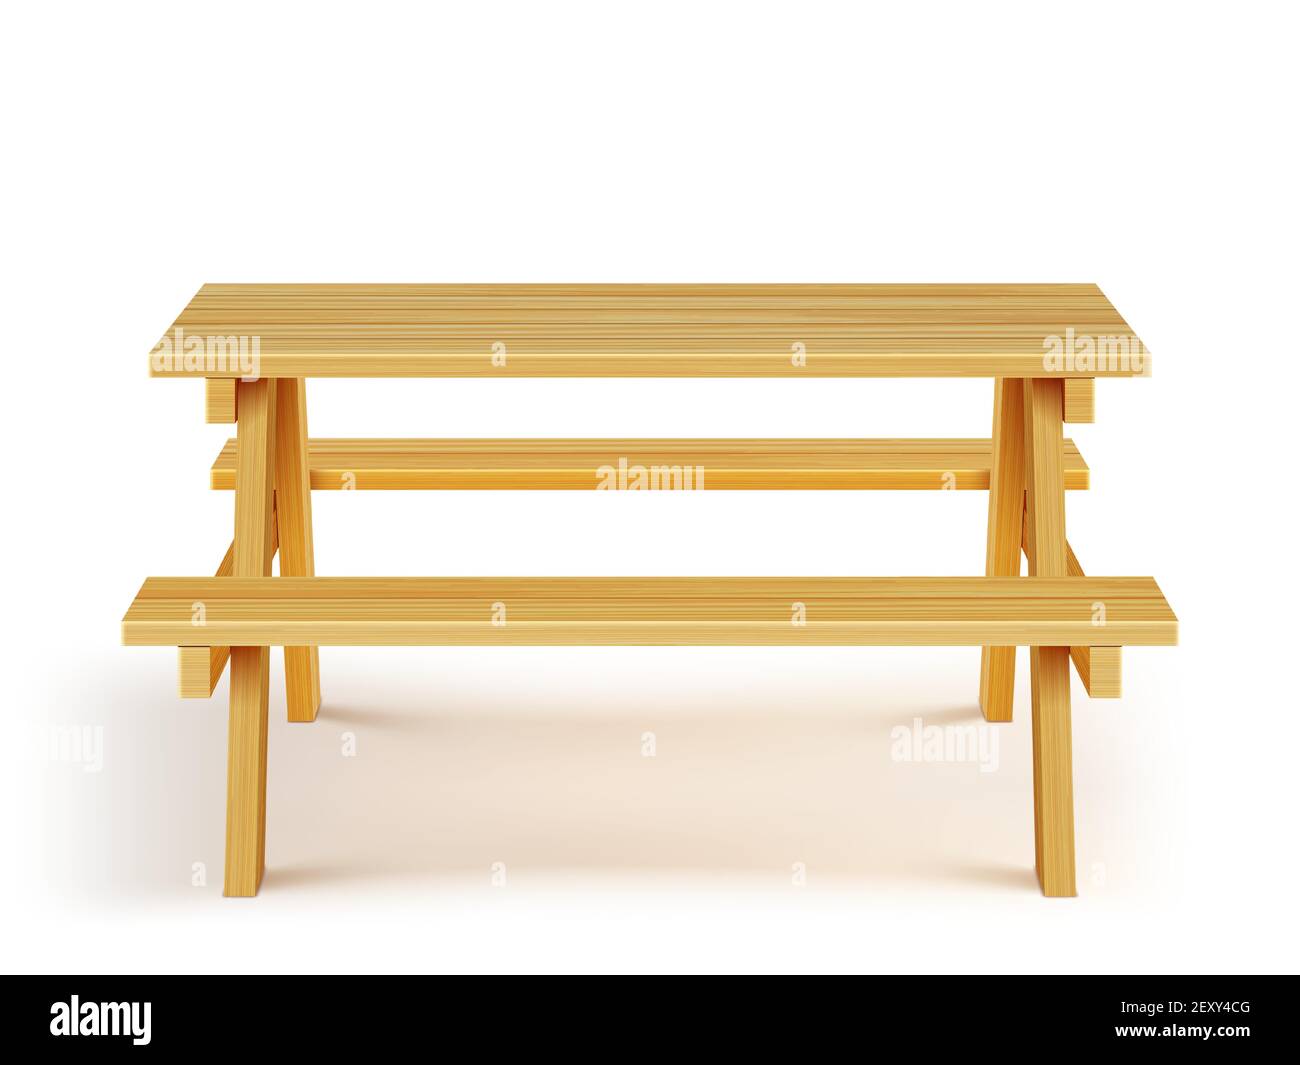 Tavolo da picnic in legno con panche, mobili in legno per barbecue all'aperto, tavolo da giardino isolato su sfondo bianco. Oggetto di disegno grafico, attrezzatura per la ricreazione del parco illustrazione vettoriale 3d realistica Illustrazione Vettoriale